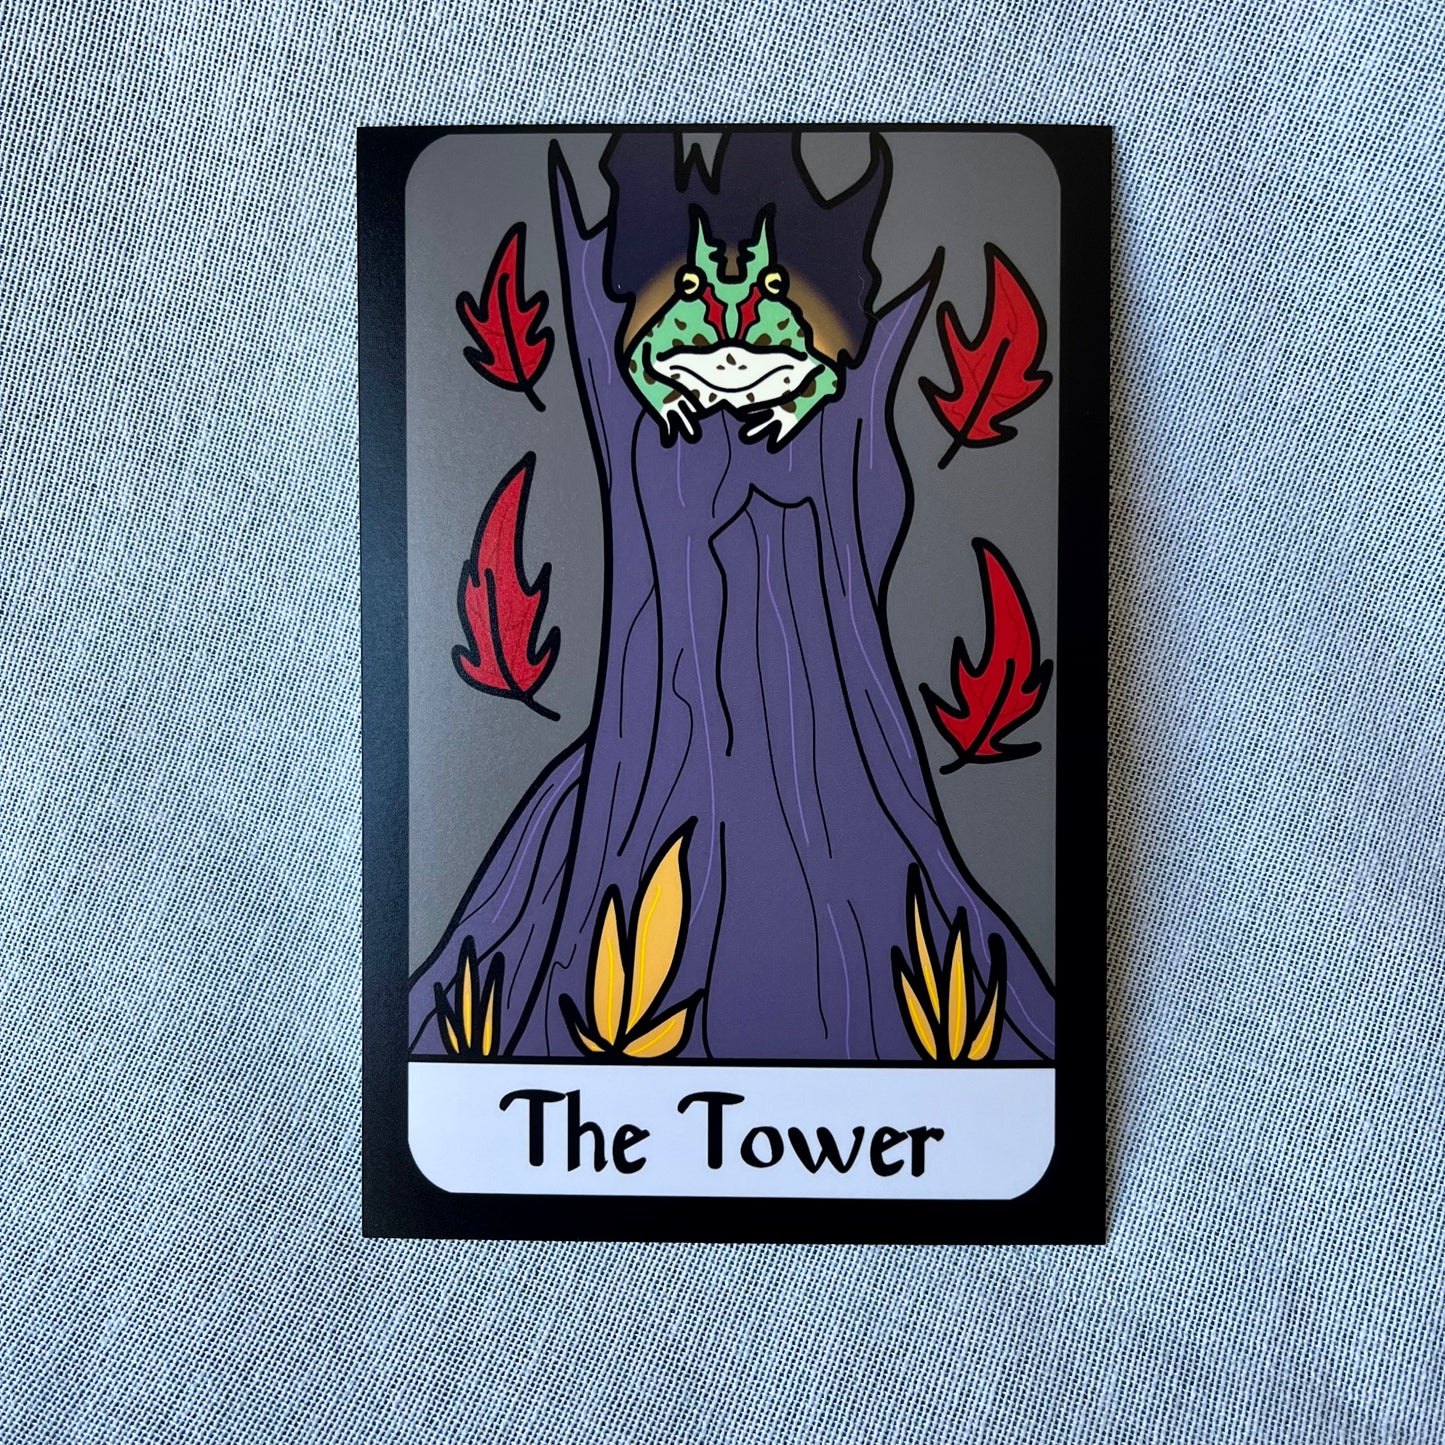 Tarot Frog - Tower Print